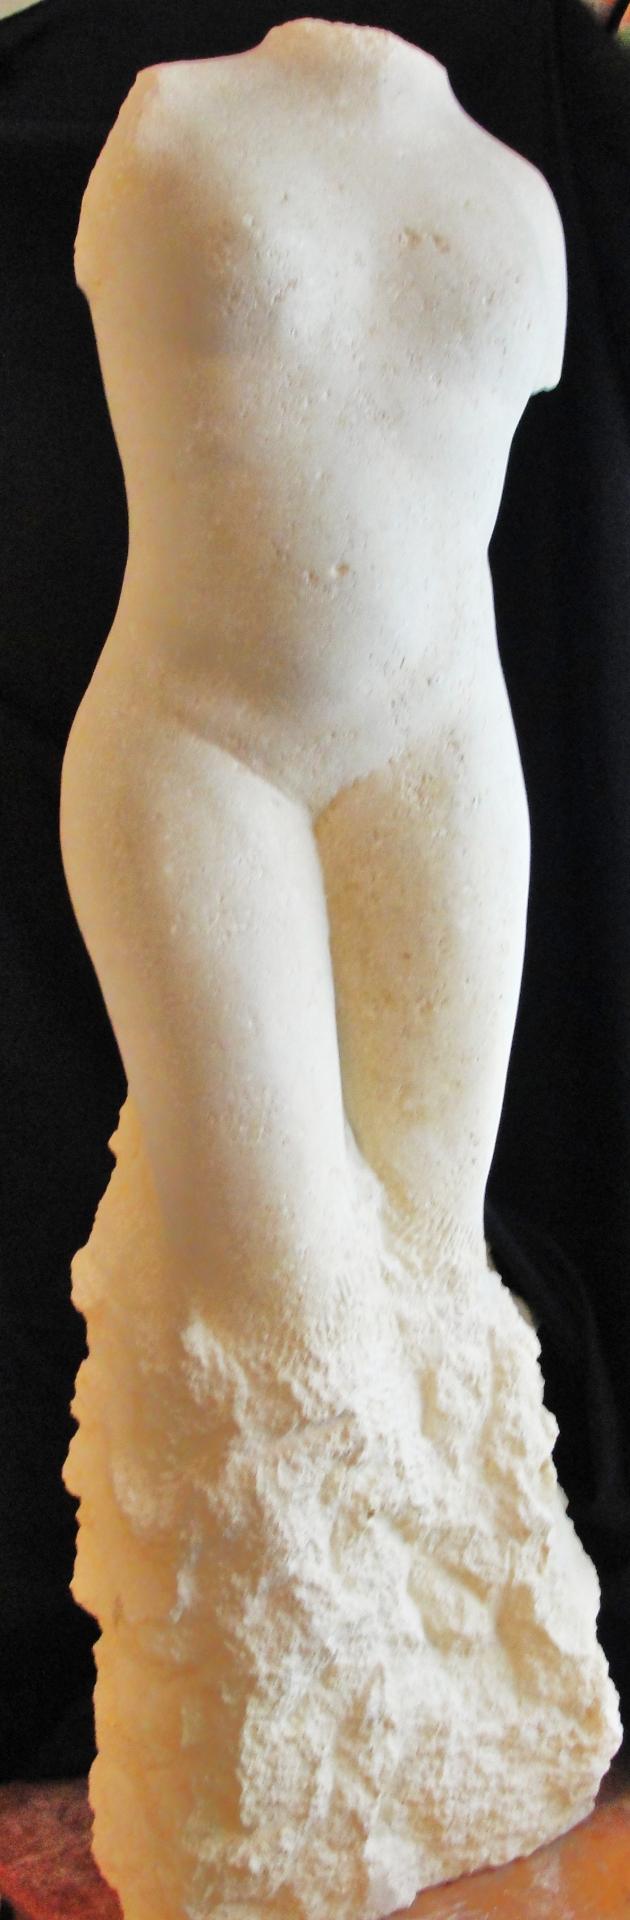 Venus sculpture en pierre statue de jean joseph chevalier 4